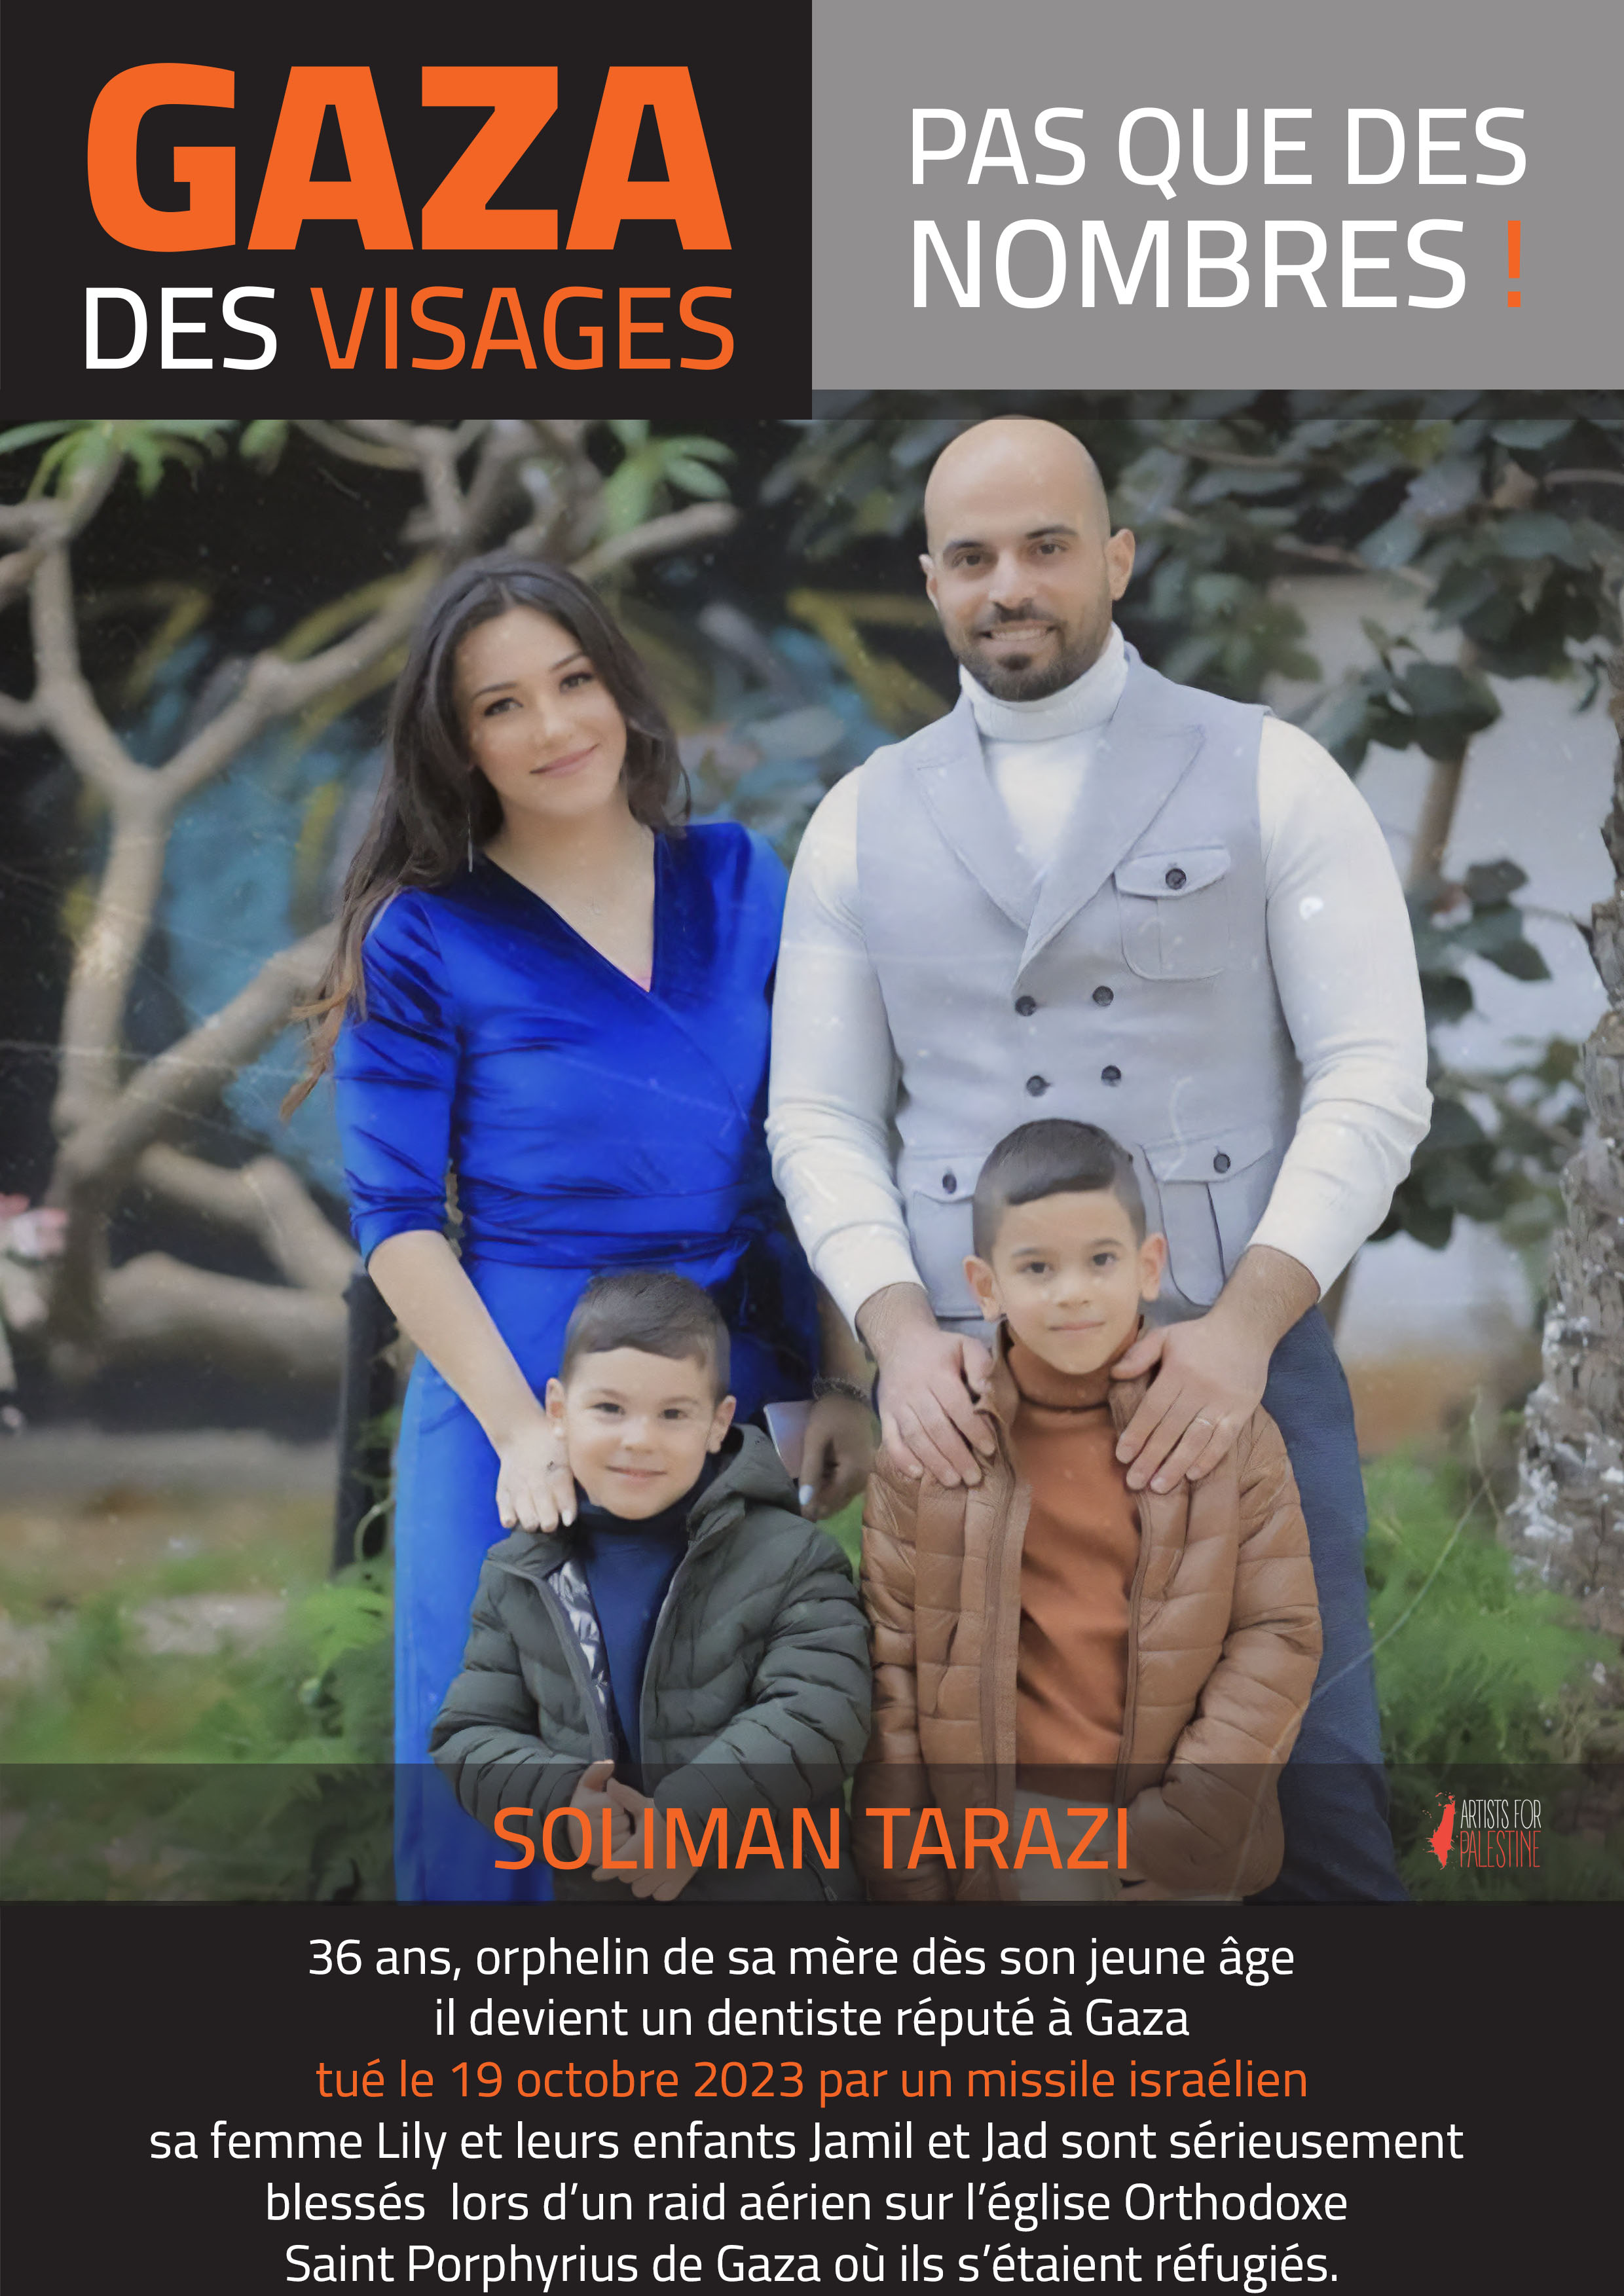 Soliman TARAZI, 36 ans, orphelin de mère dès son jeune âge, est un dentiste réputé à Gaza. Tué le 19 octobre 2023 par un missile israélien. Sa femme, Lily et leurs enfants, Jamil et Jad sont sérieusement blessés lors d'un raid aérien sur l'église orthodoxe Saint Porphyrius de Gaza où ils s'étaient réfugiés.